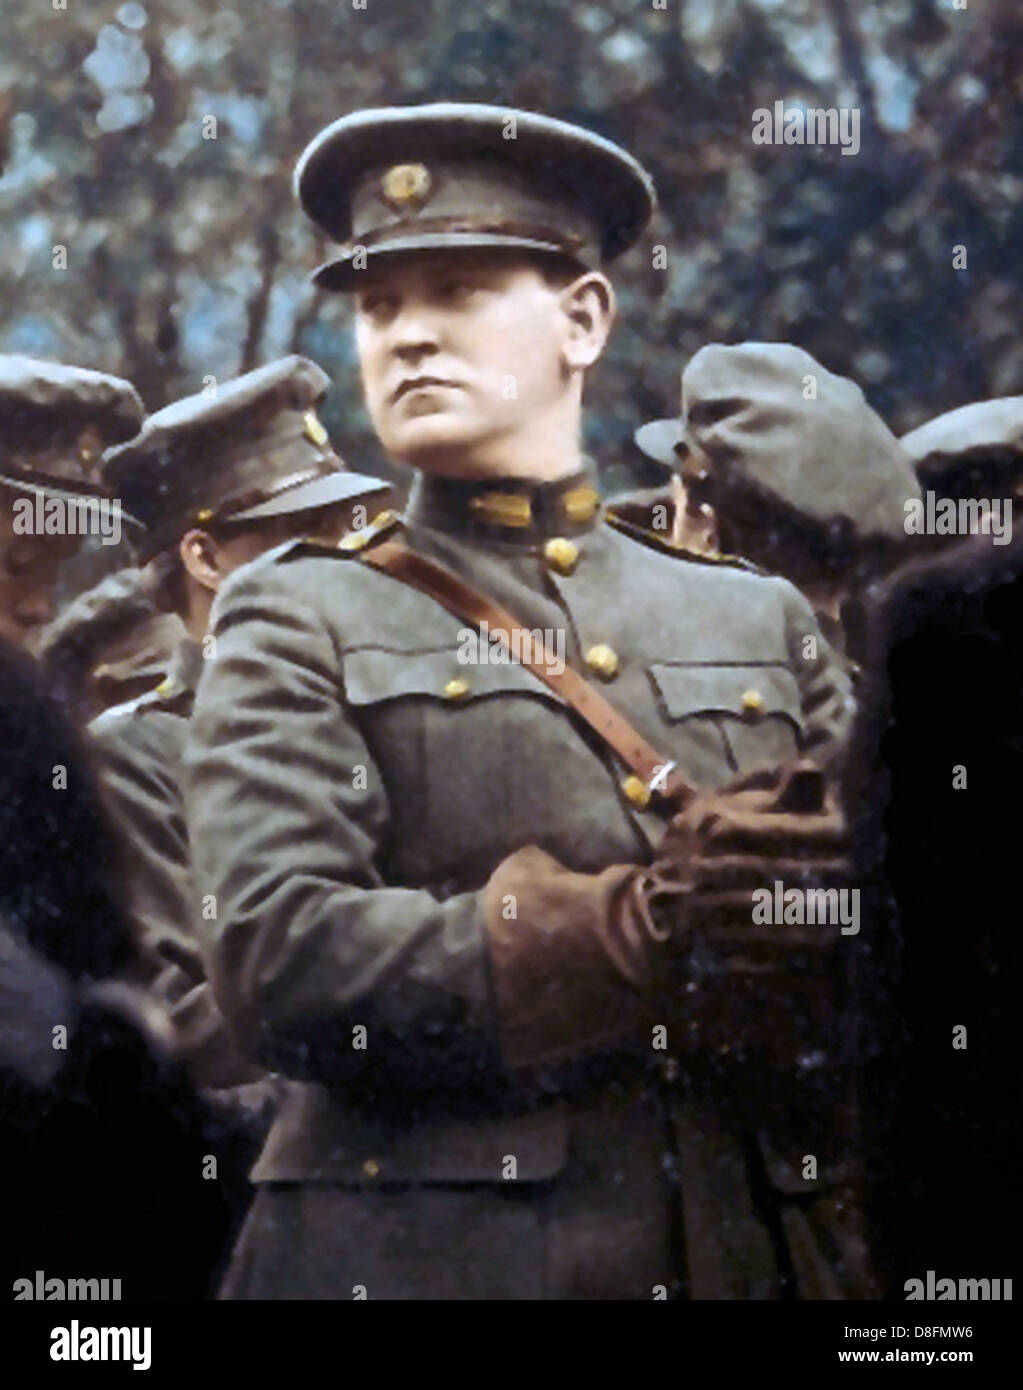 MICHAEL COLLINS (1890-1922) rivoluzionaria irlandese leader al funerale di Arthur Griffin, Dublin 16 agosto 1922-Vedere la descrizione riportata di seguito Foto Stock